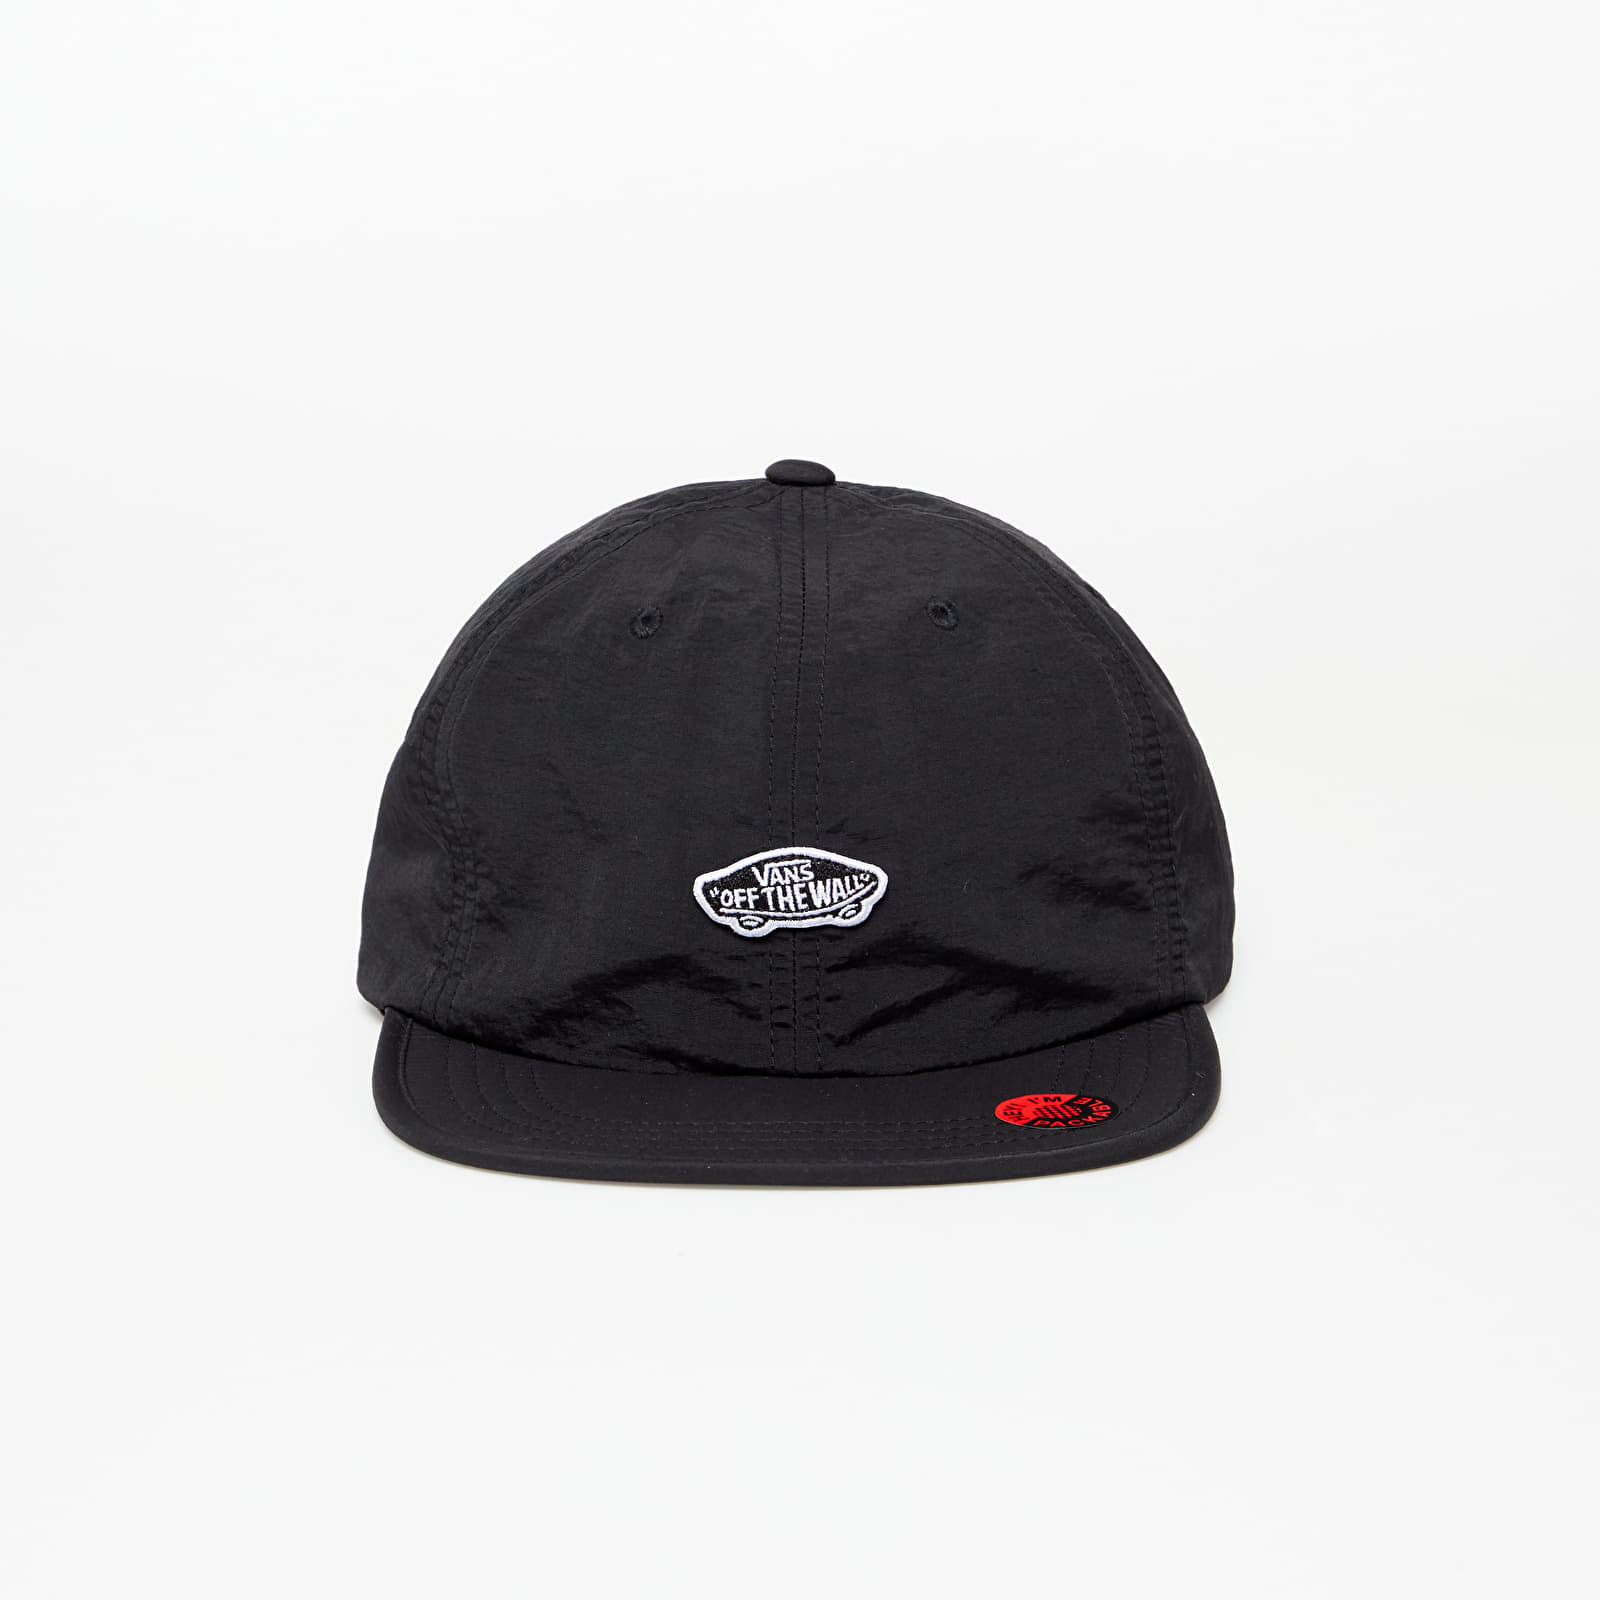 Caps Vans Packed Hat Black